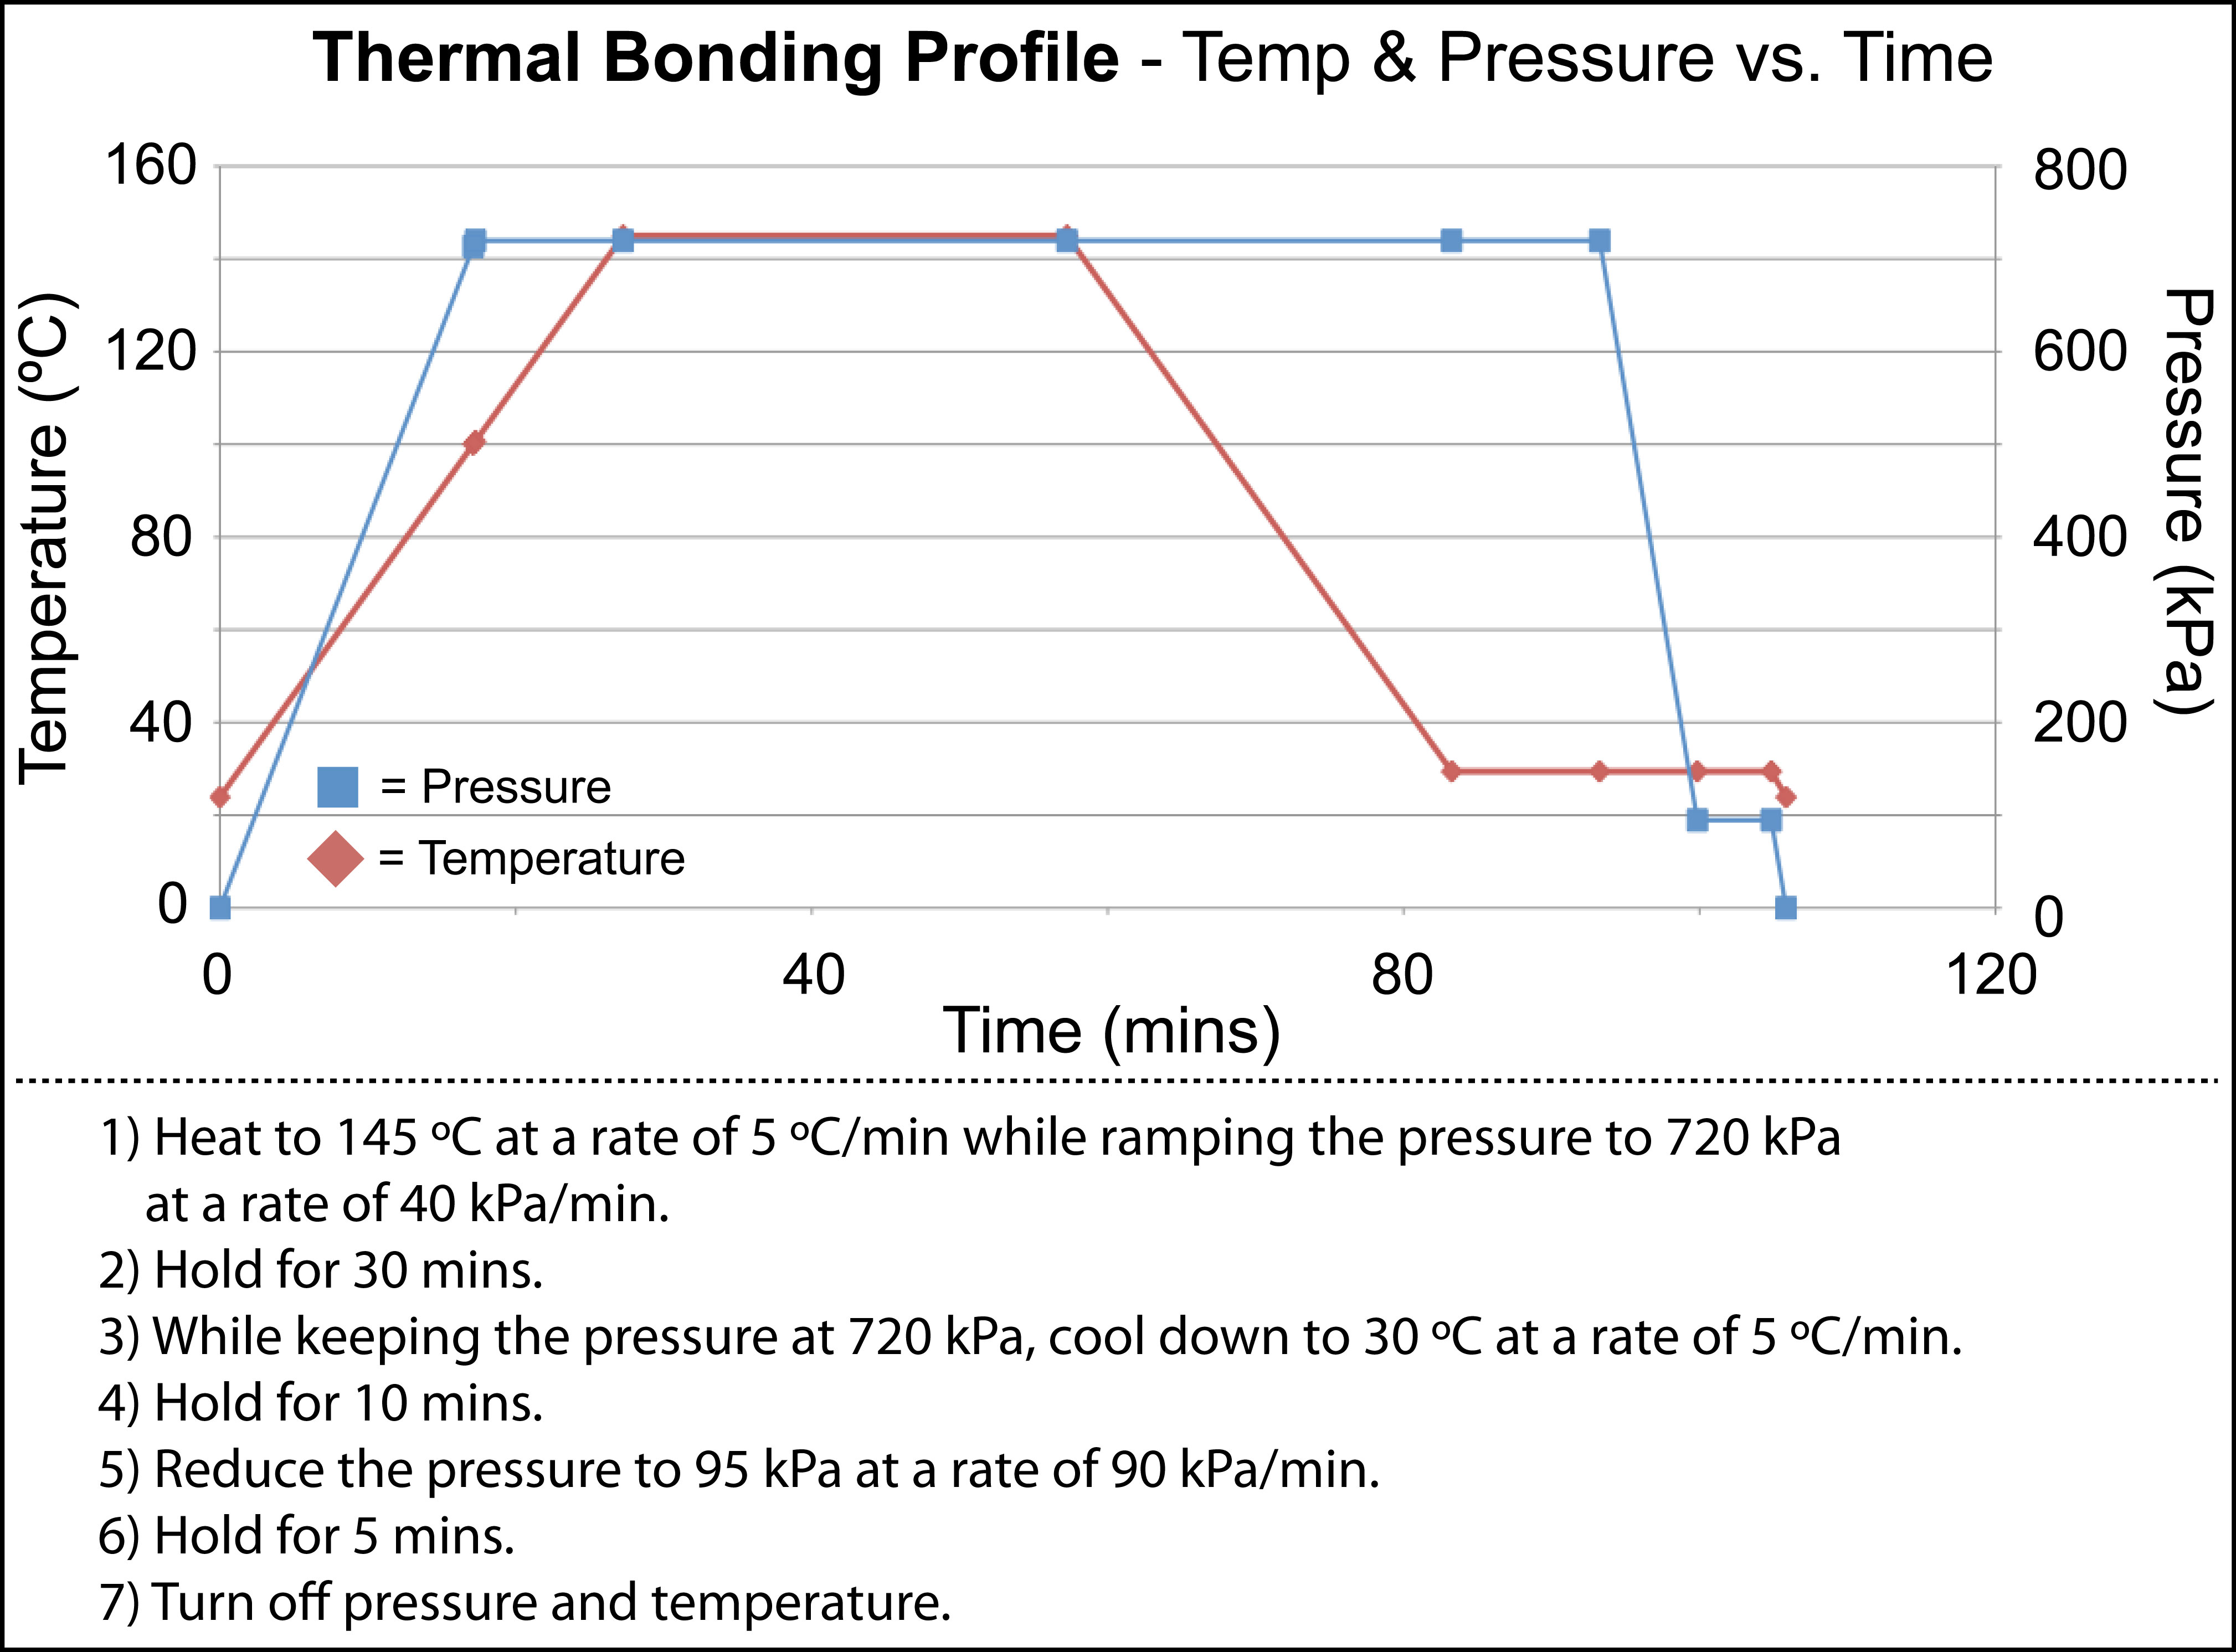 The thermal bonding parameters